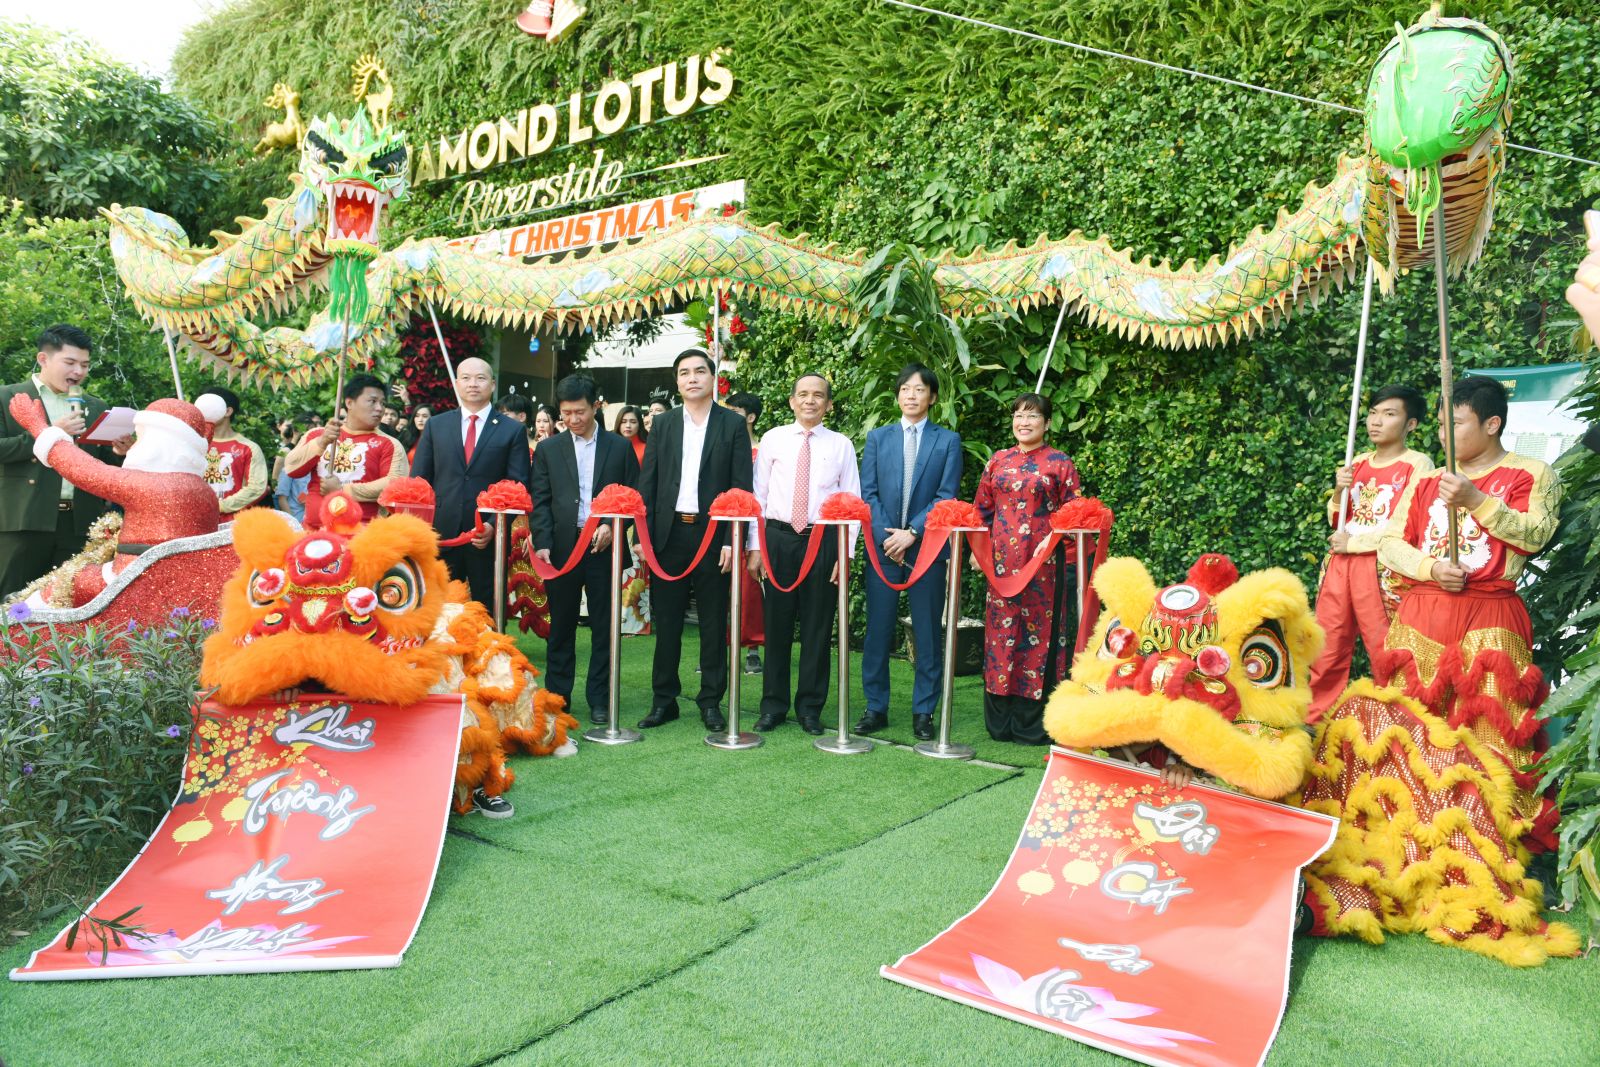 Diamond Lotus Riverside: Nối cầu dây văng Sky Park đầu tiên tại Việt Nam và khai trương căn hộ khách sạn